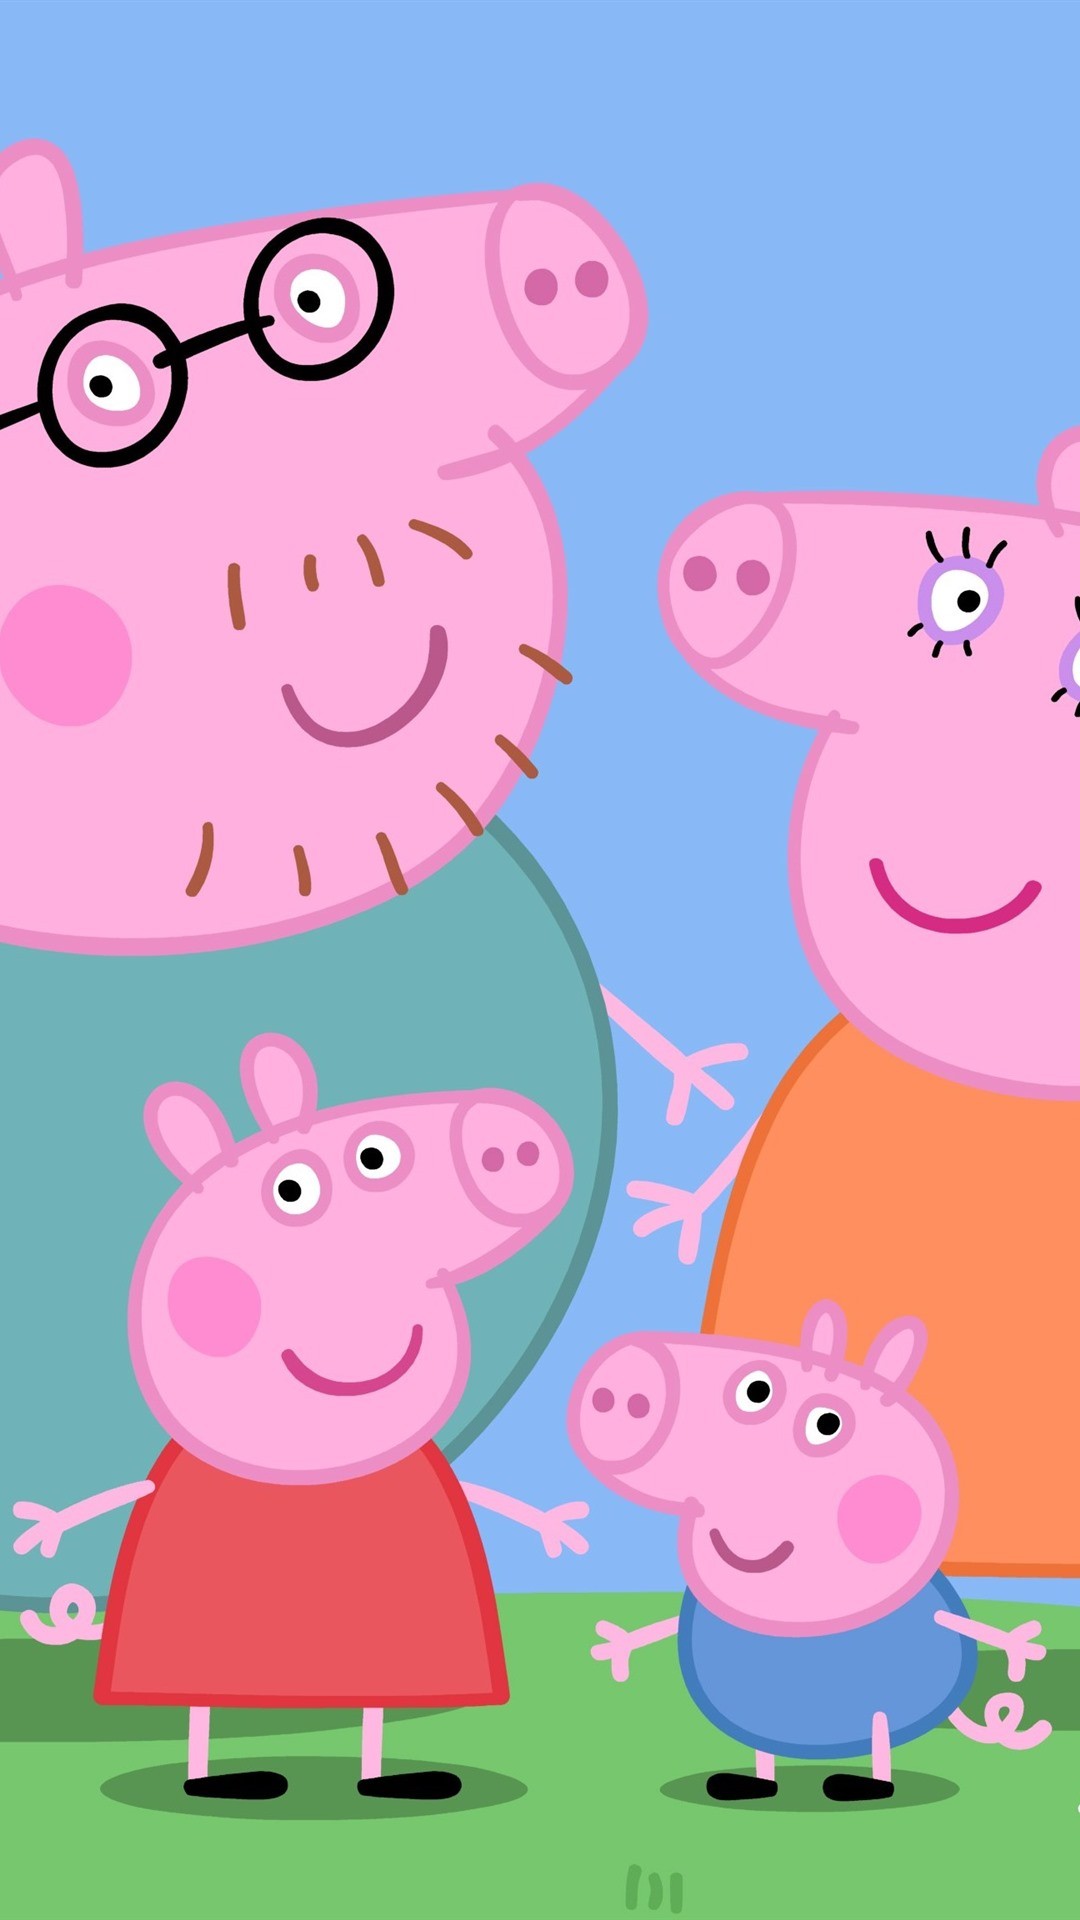 HD Casa Peppa Pig Wallpaper - EnWallpaper